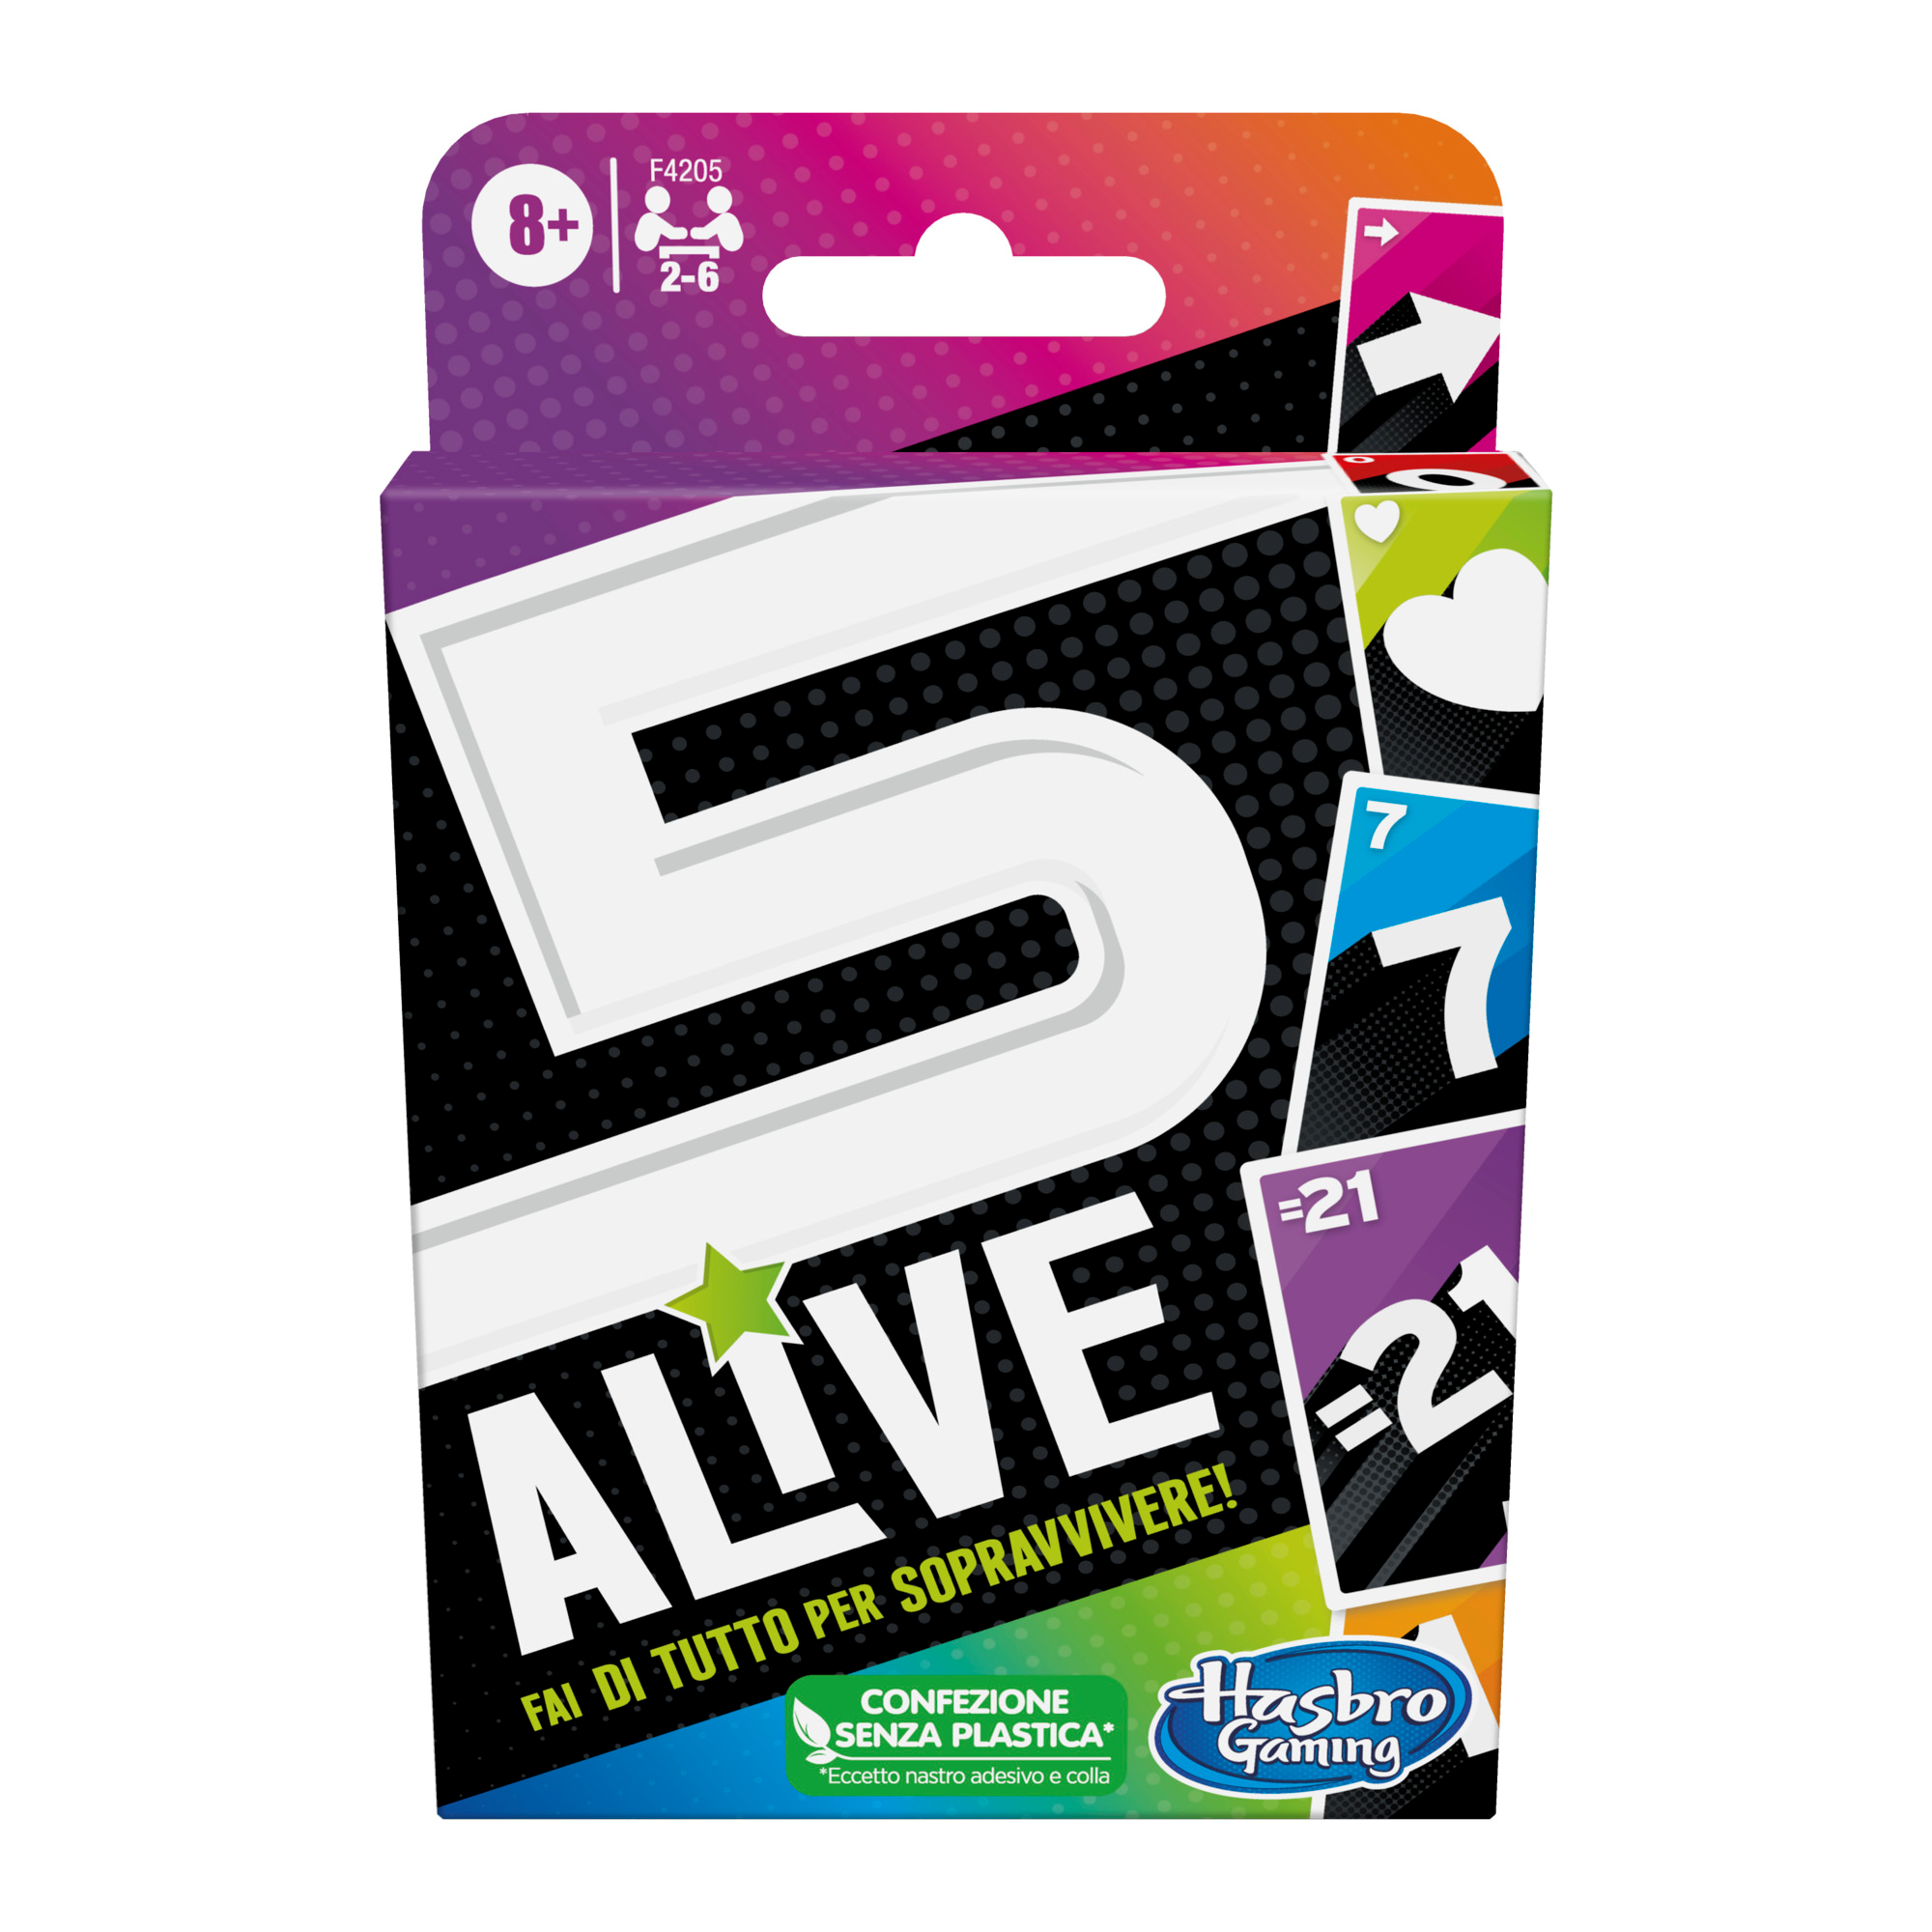 5 alive, gioco di carte veloce per famiglie, dagli 8 anni in su, per 2-6 giocatori - HASBRO GAMING